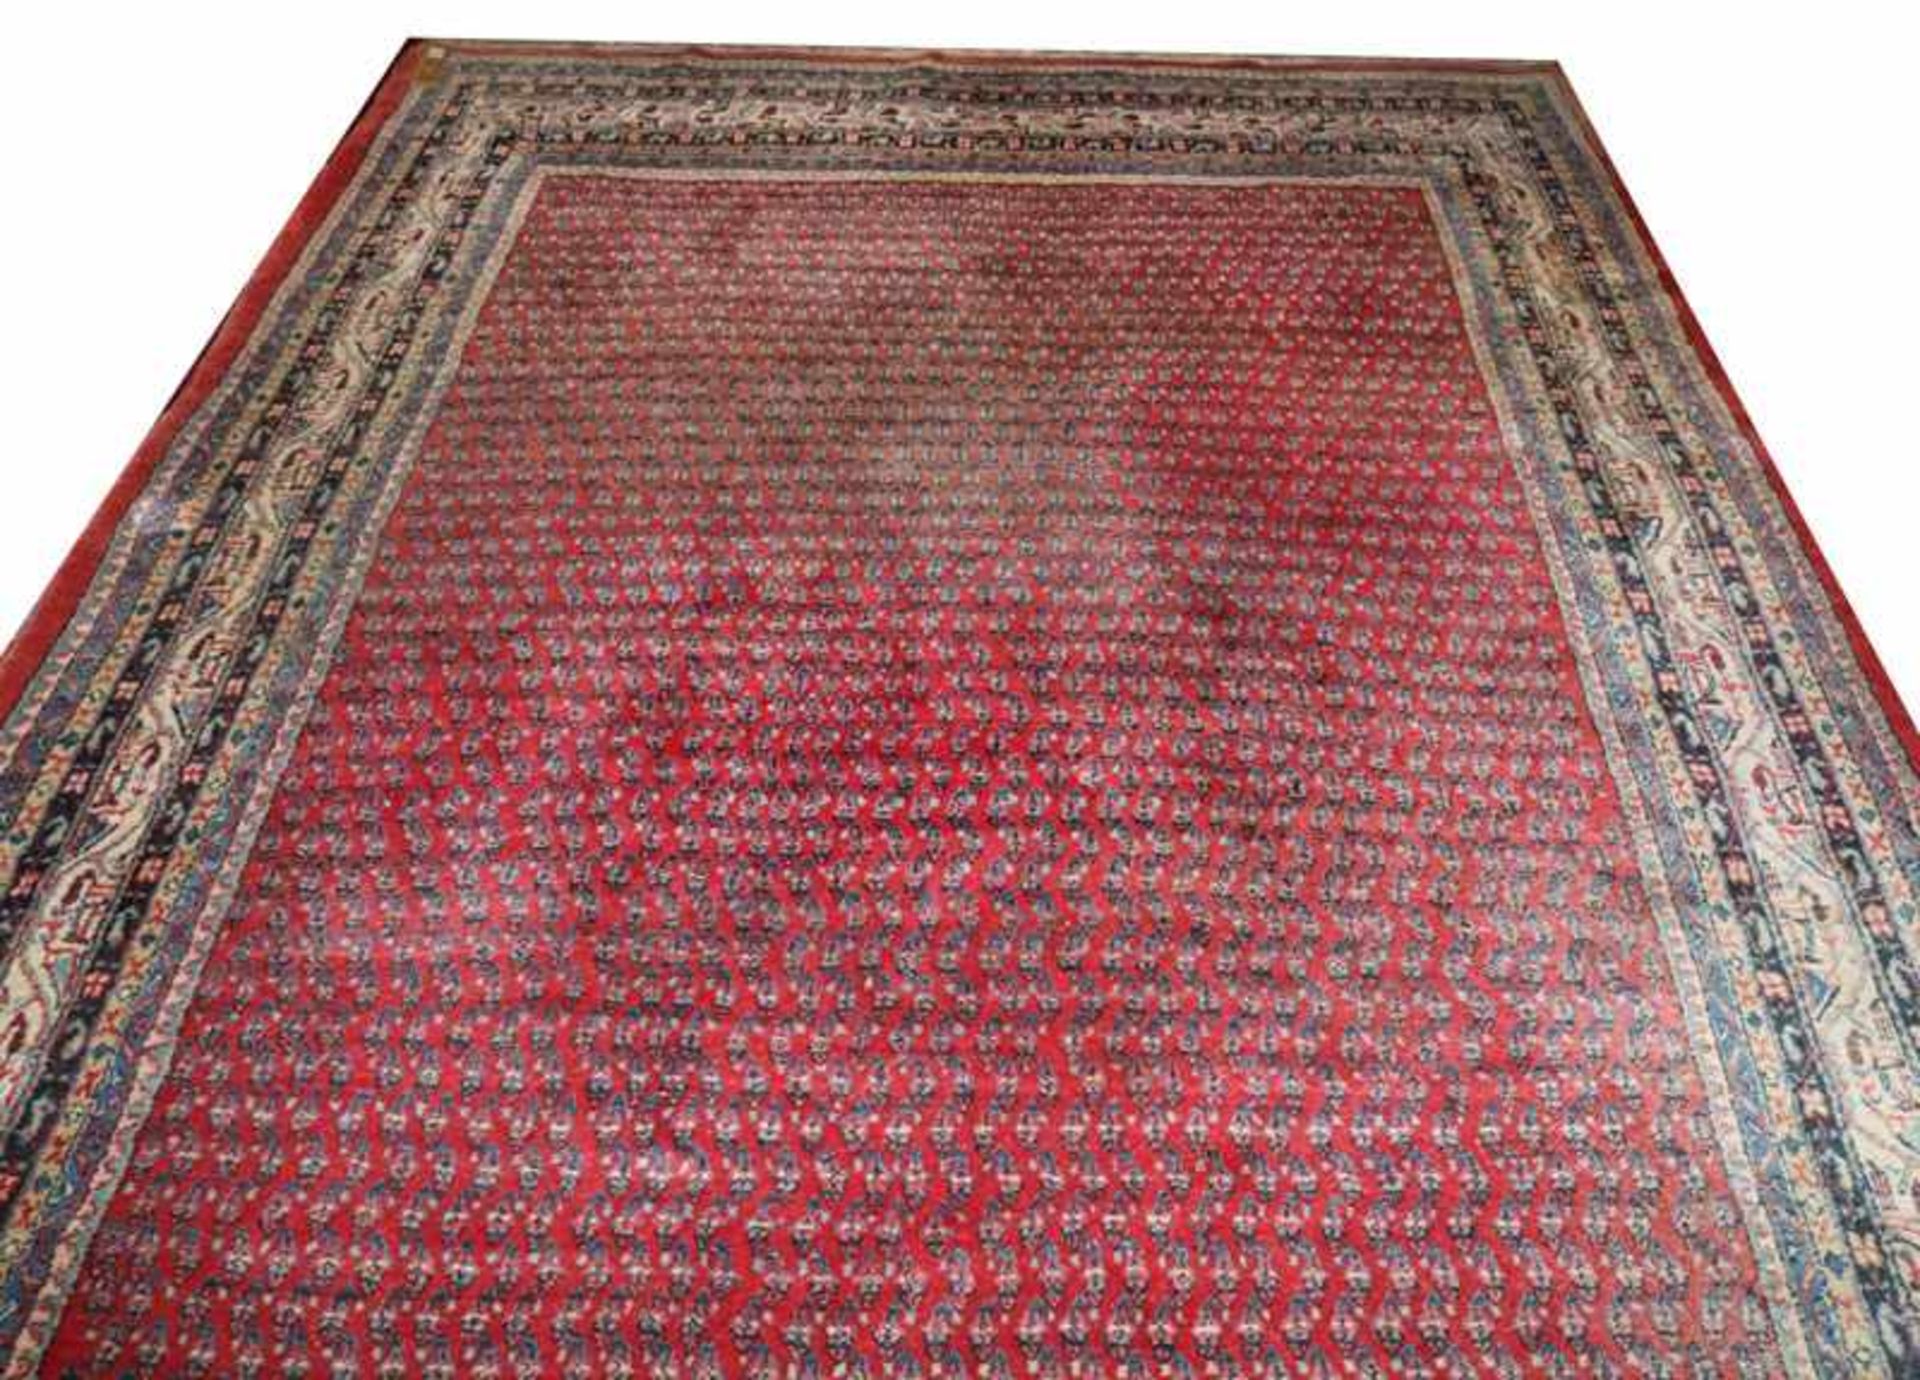 Teppich, Mir, rot/bunt, Gebrauchsspuren, teils beschädigt, 310 cm x 214 cm